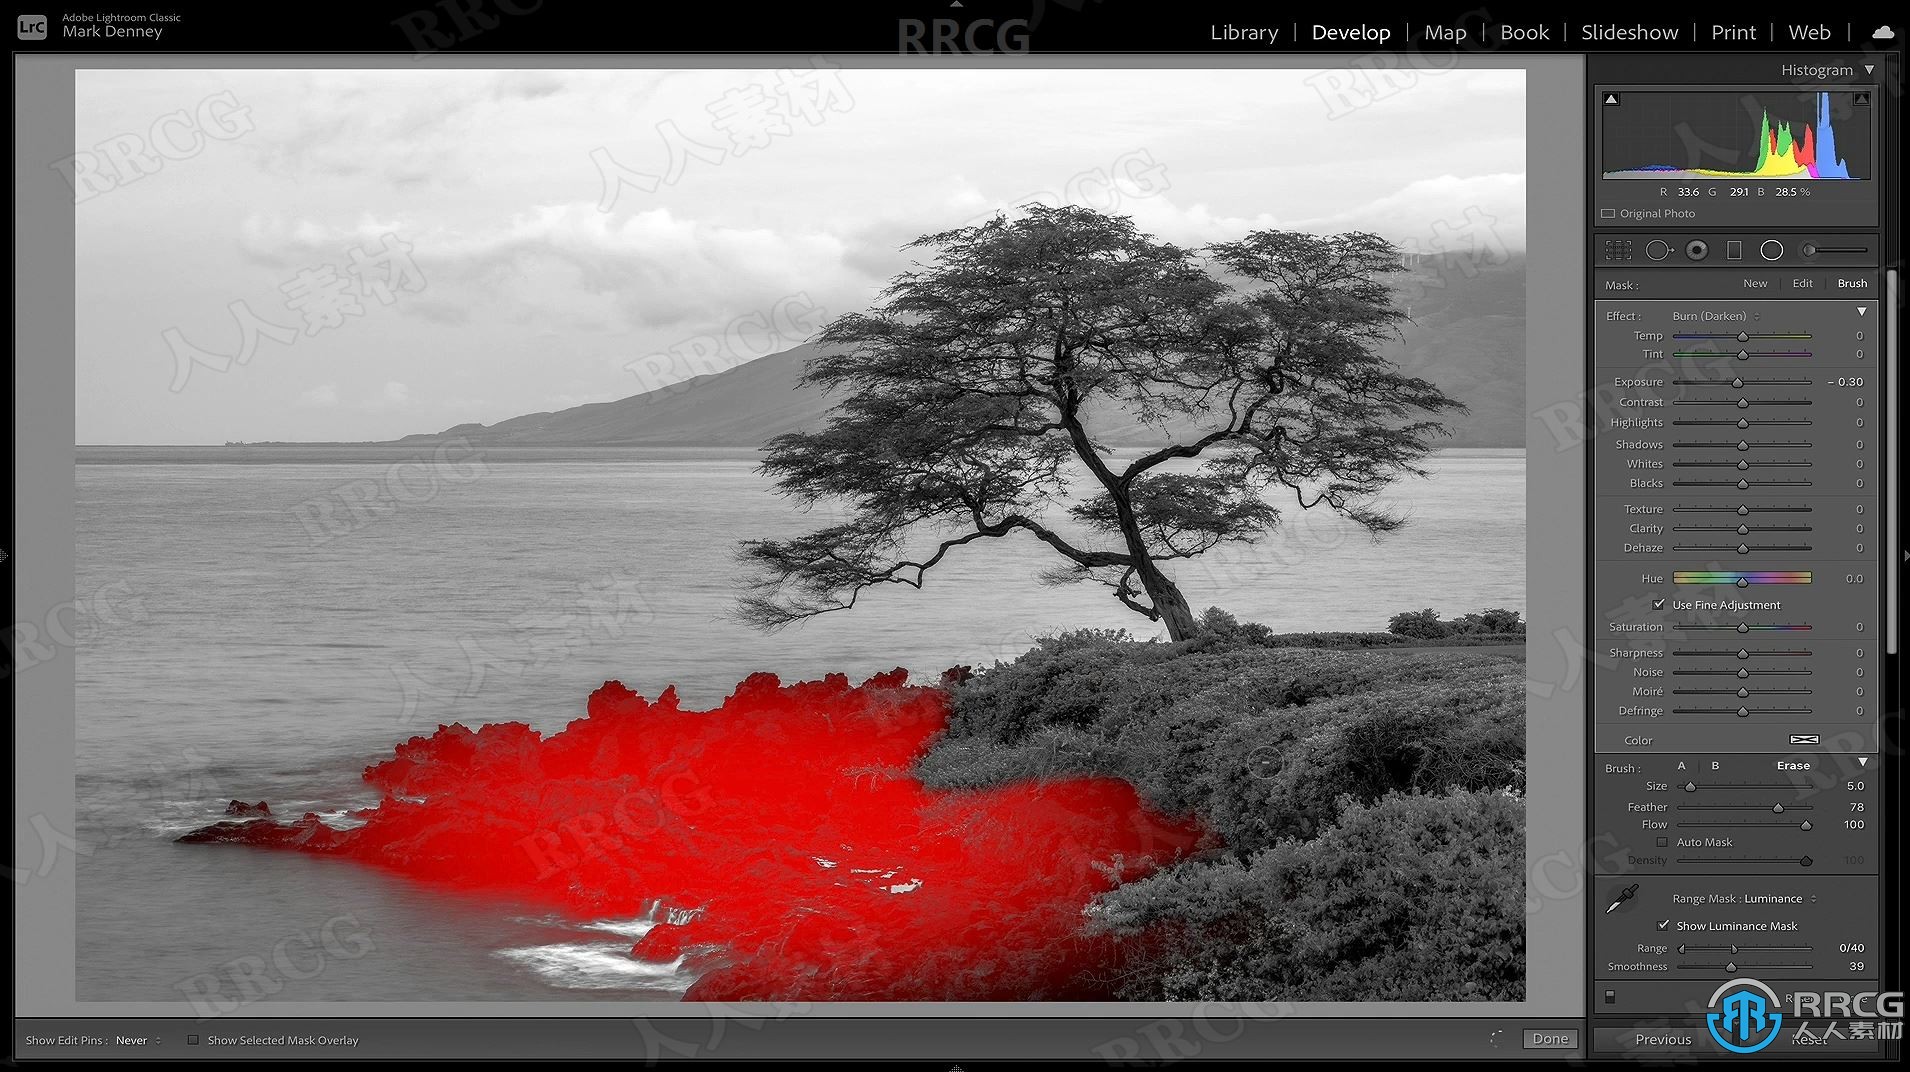 LR范围蒙版遮罩工具创建风景图像后期修饰视频教程